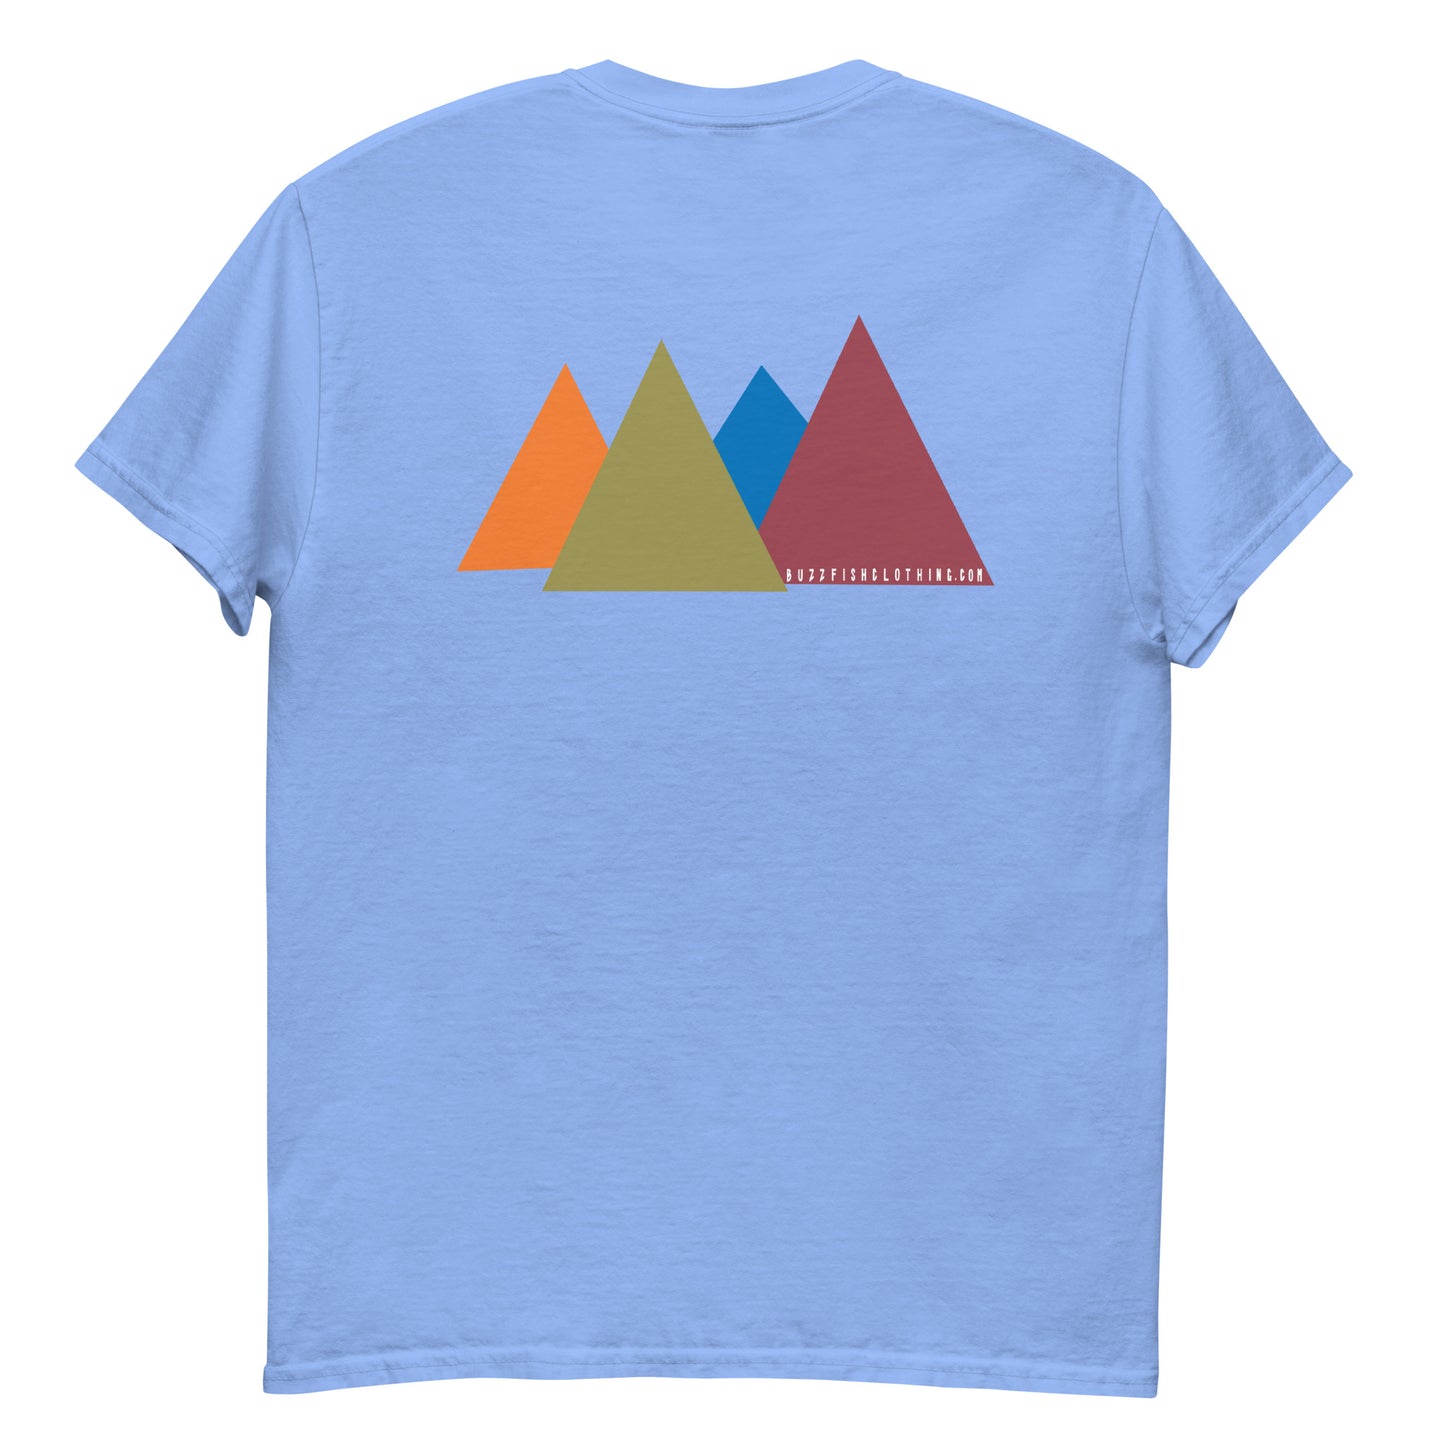 Spikey mountains logo Tee